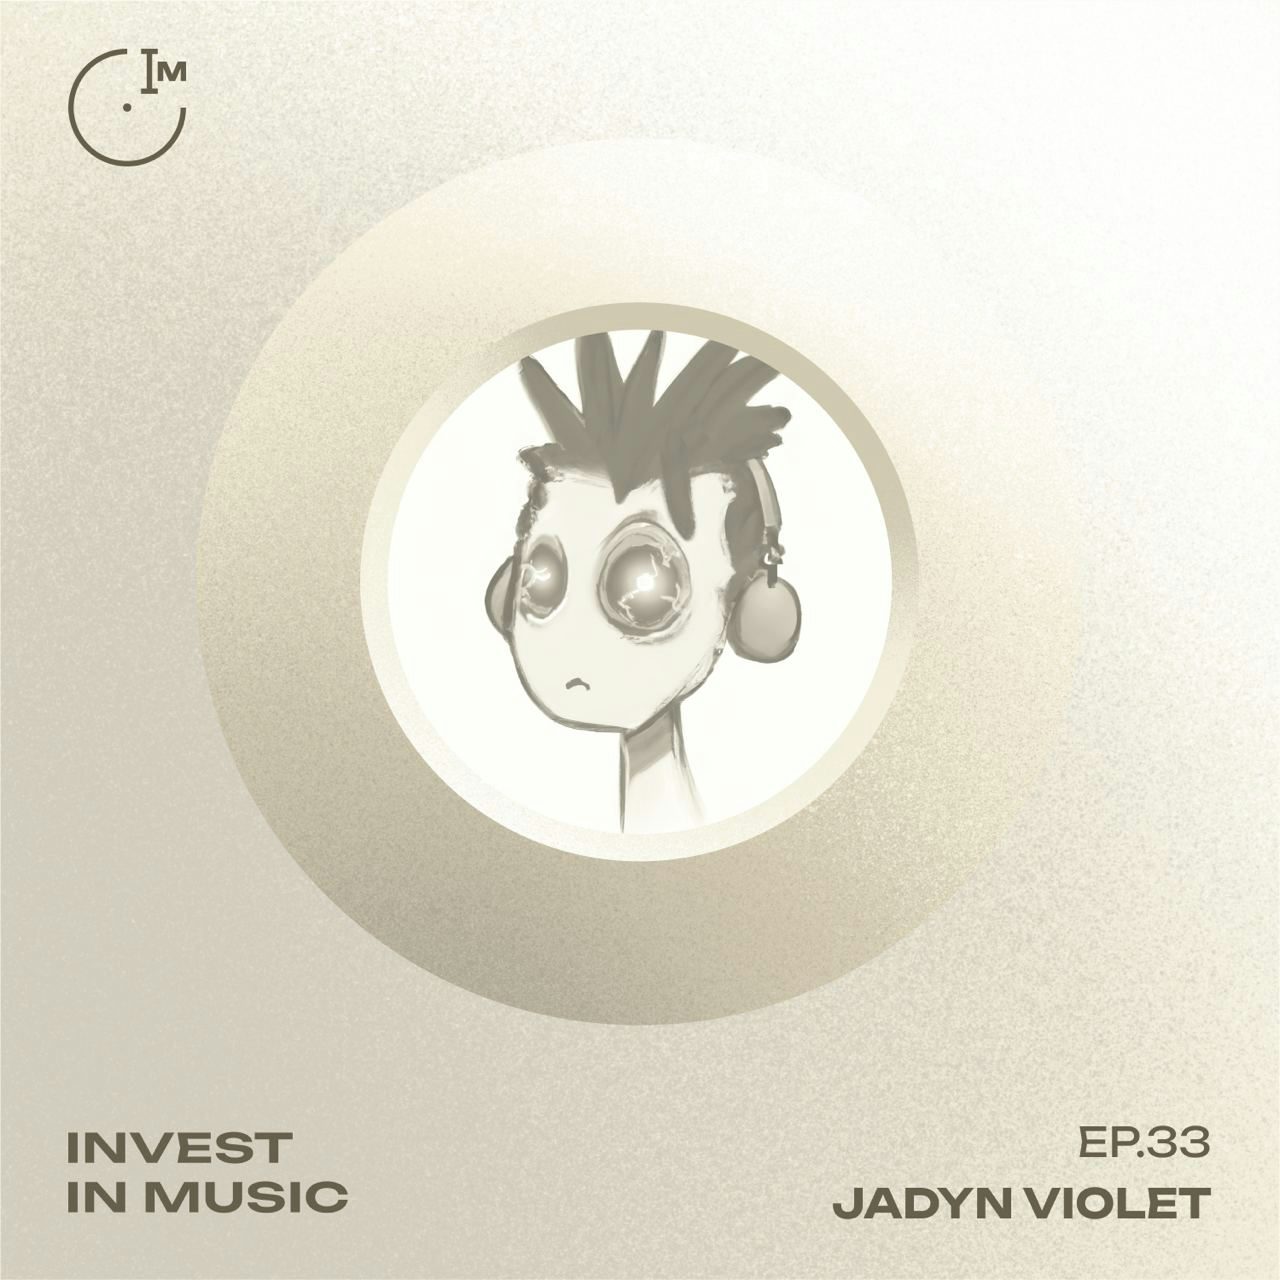 Ep 33 - Jadyn Violet coverart